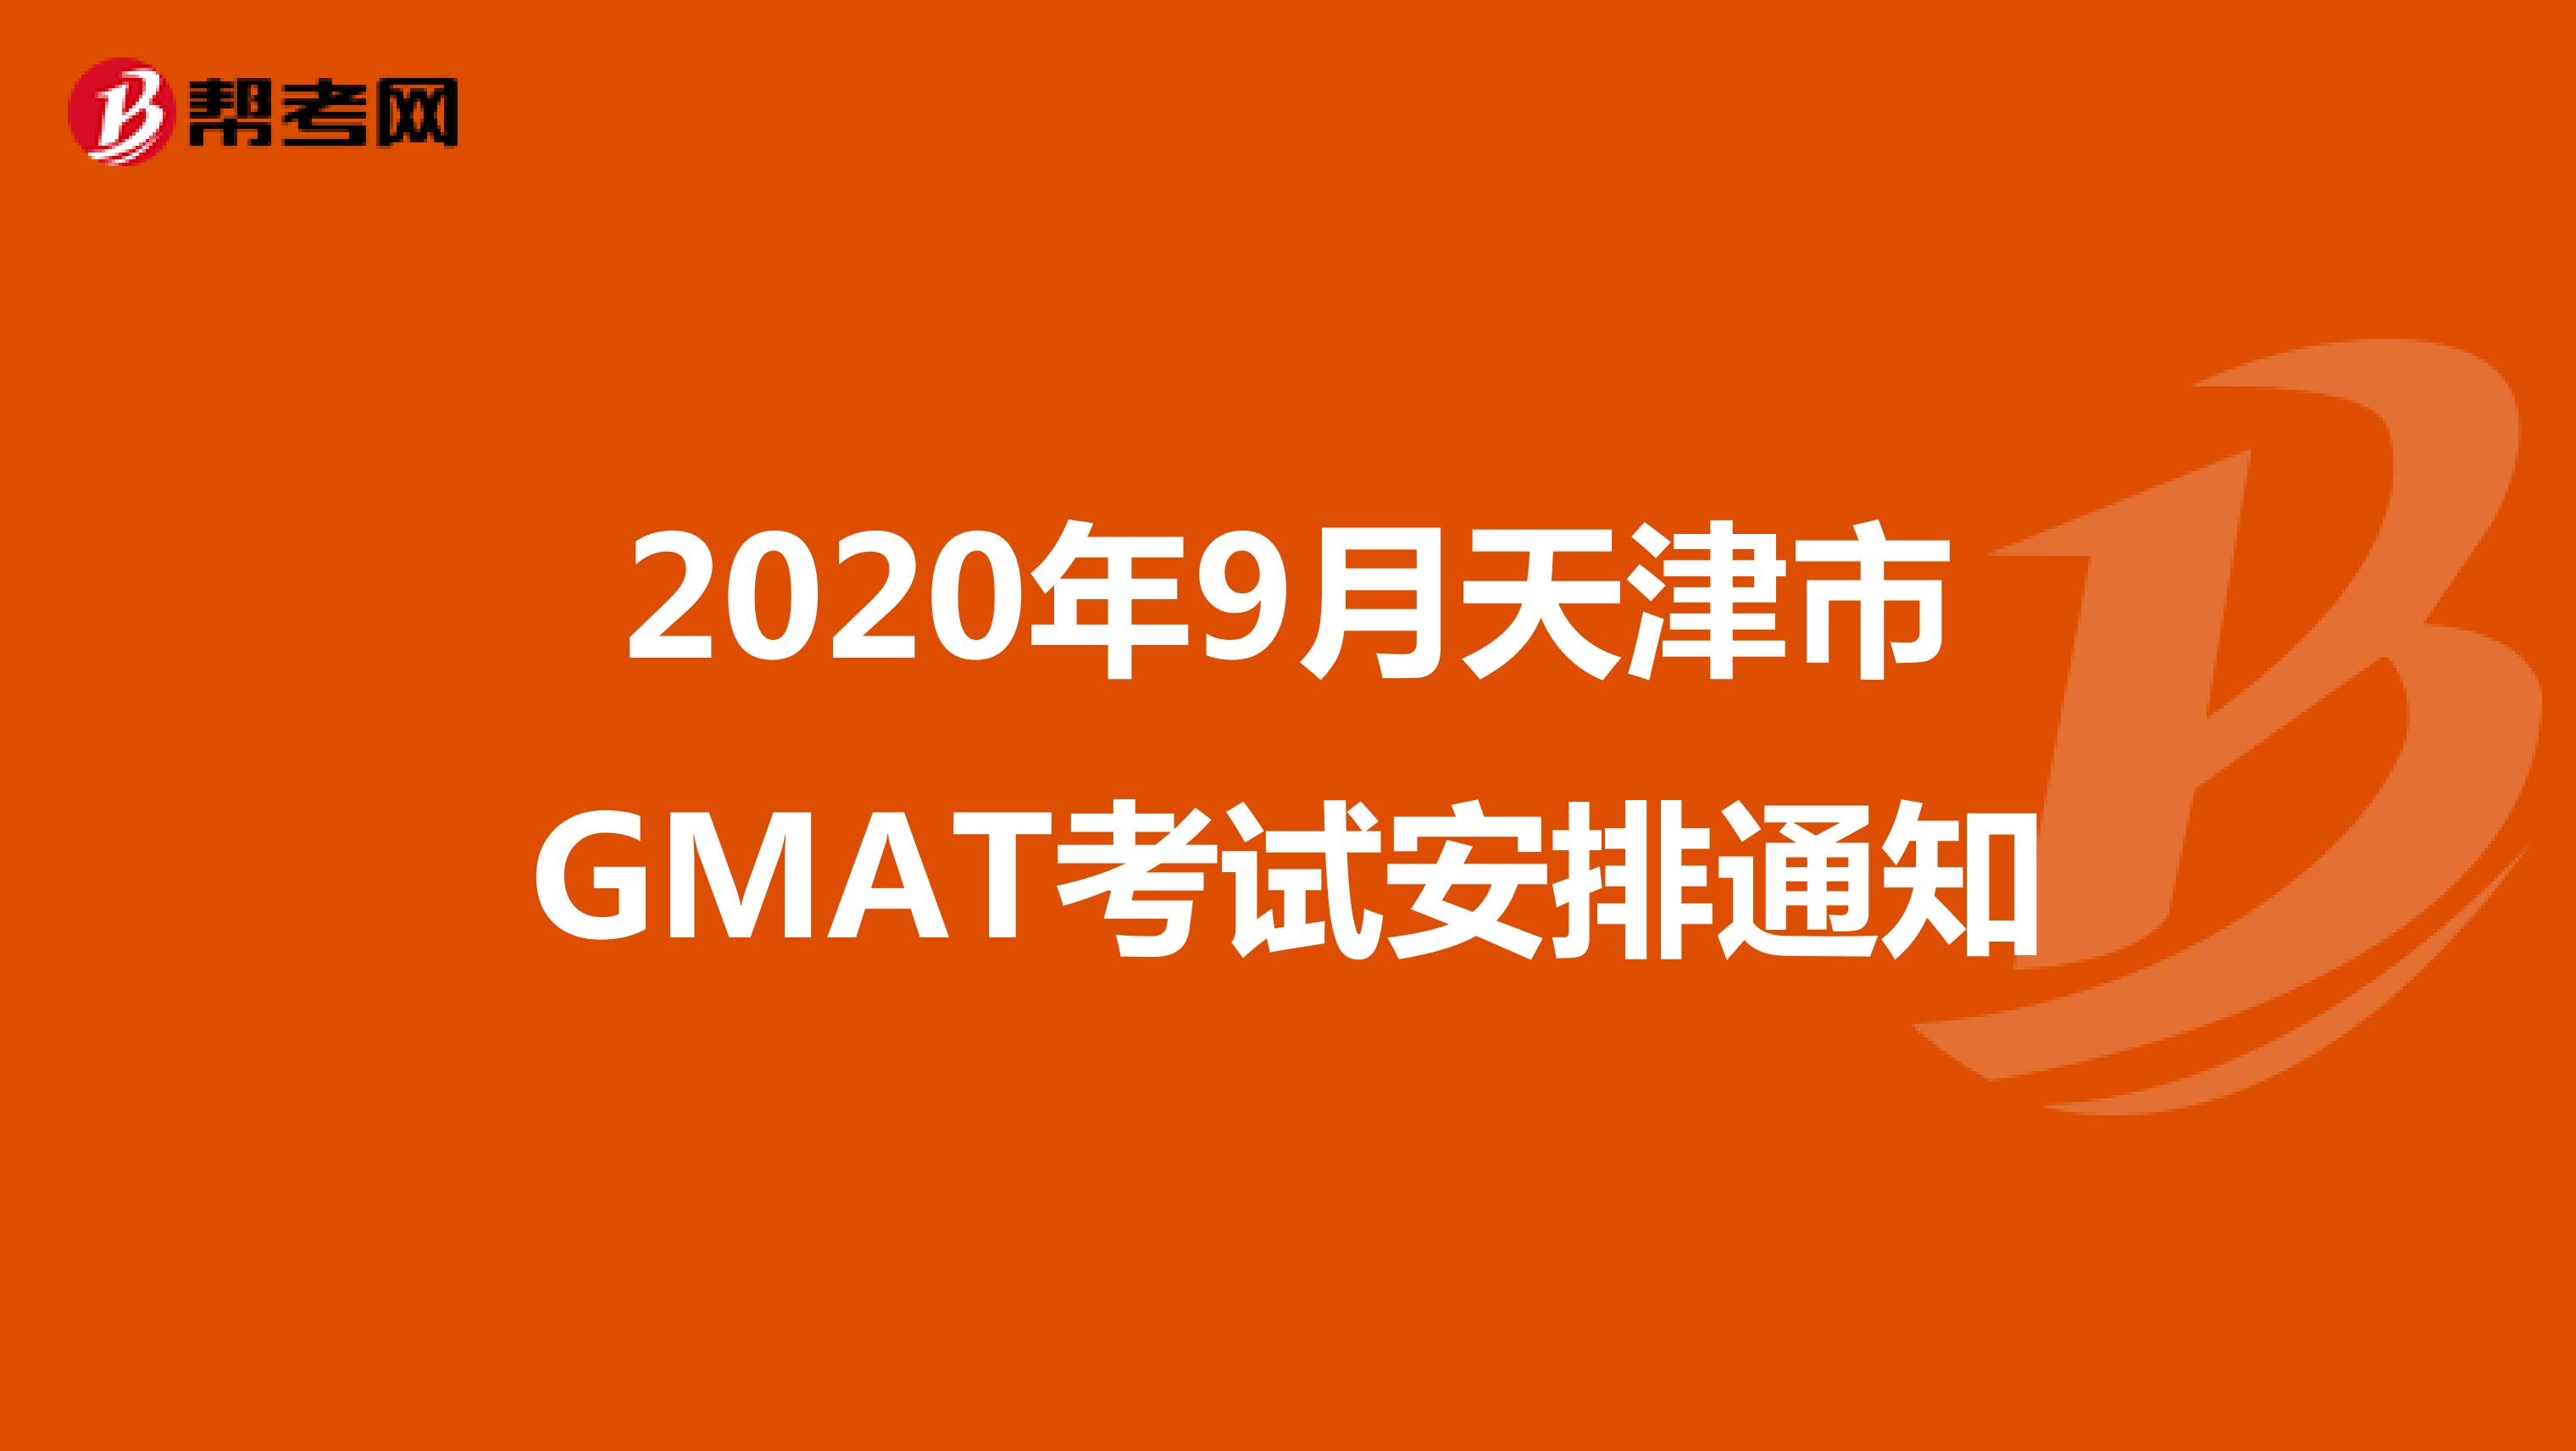 2020年9月天津市GMAT考试安排通知